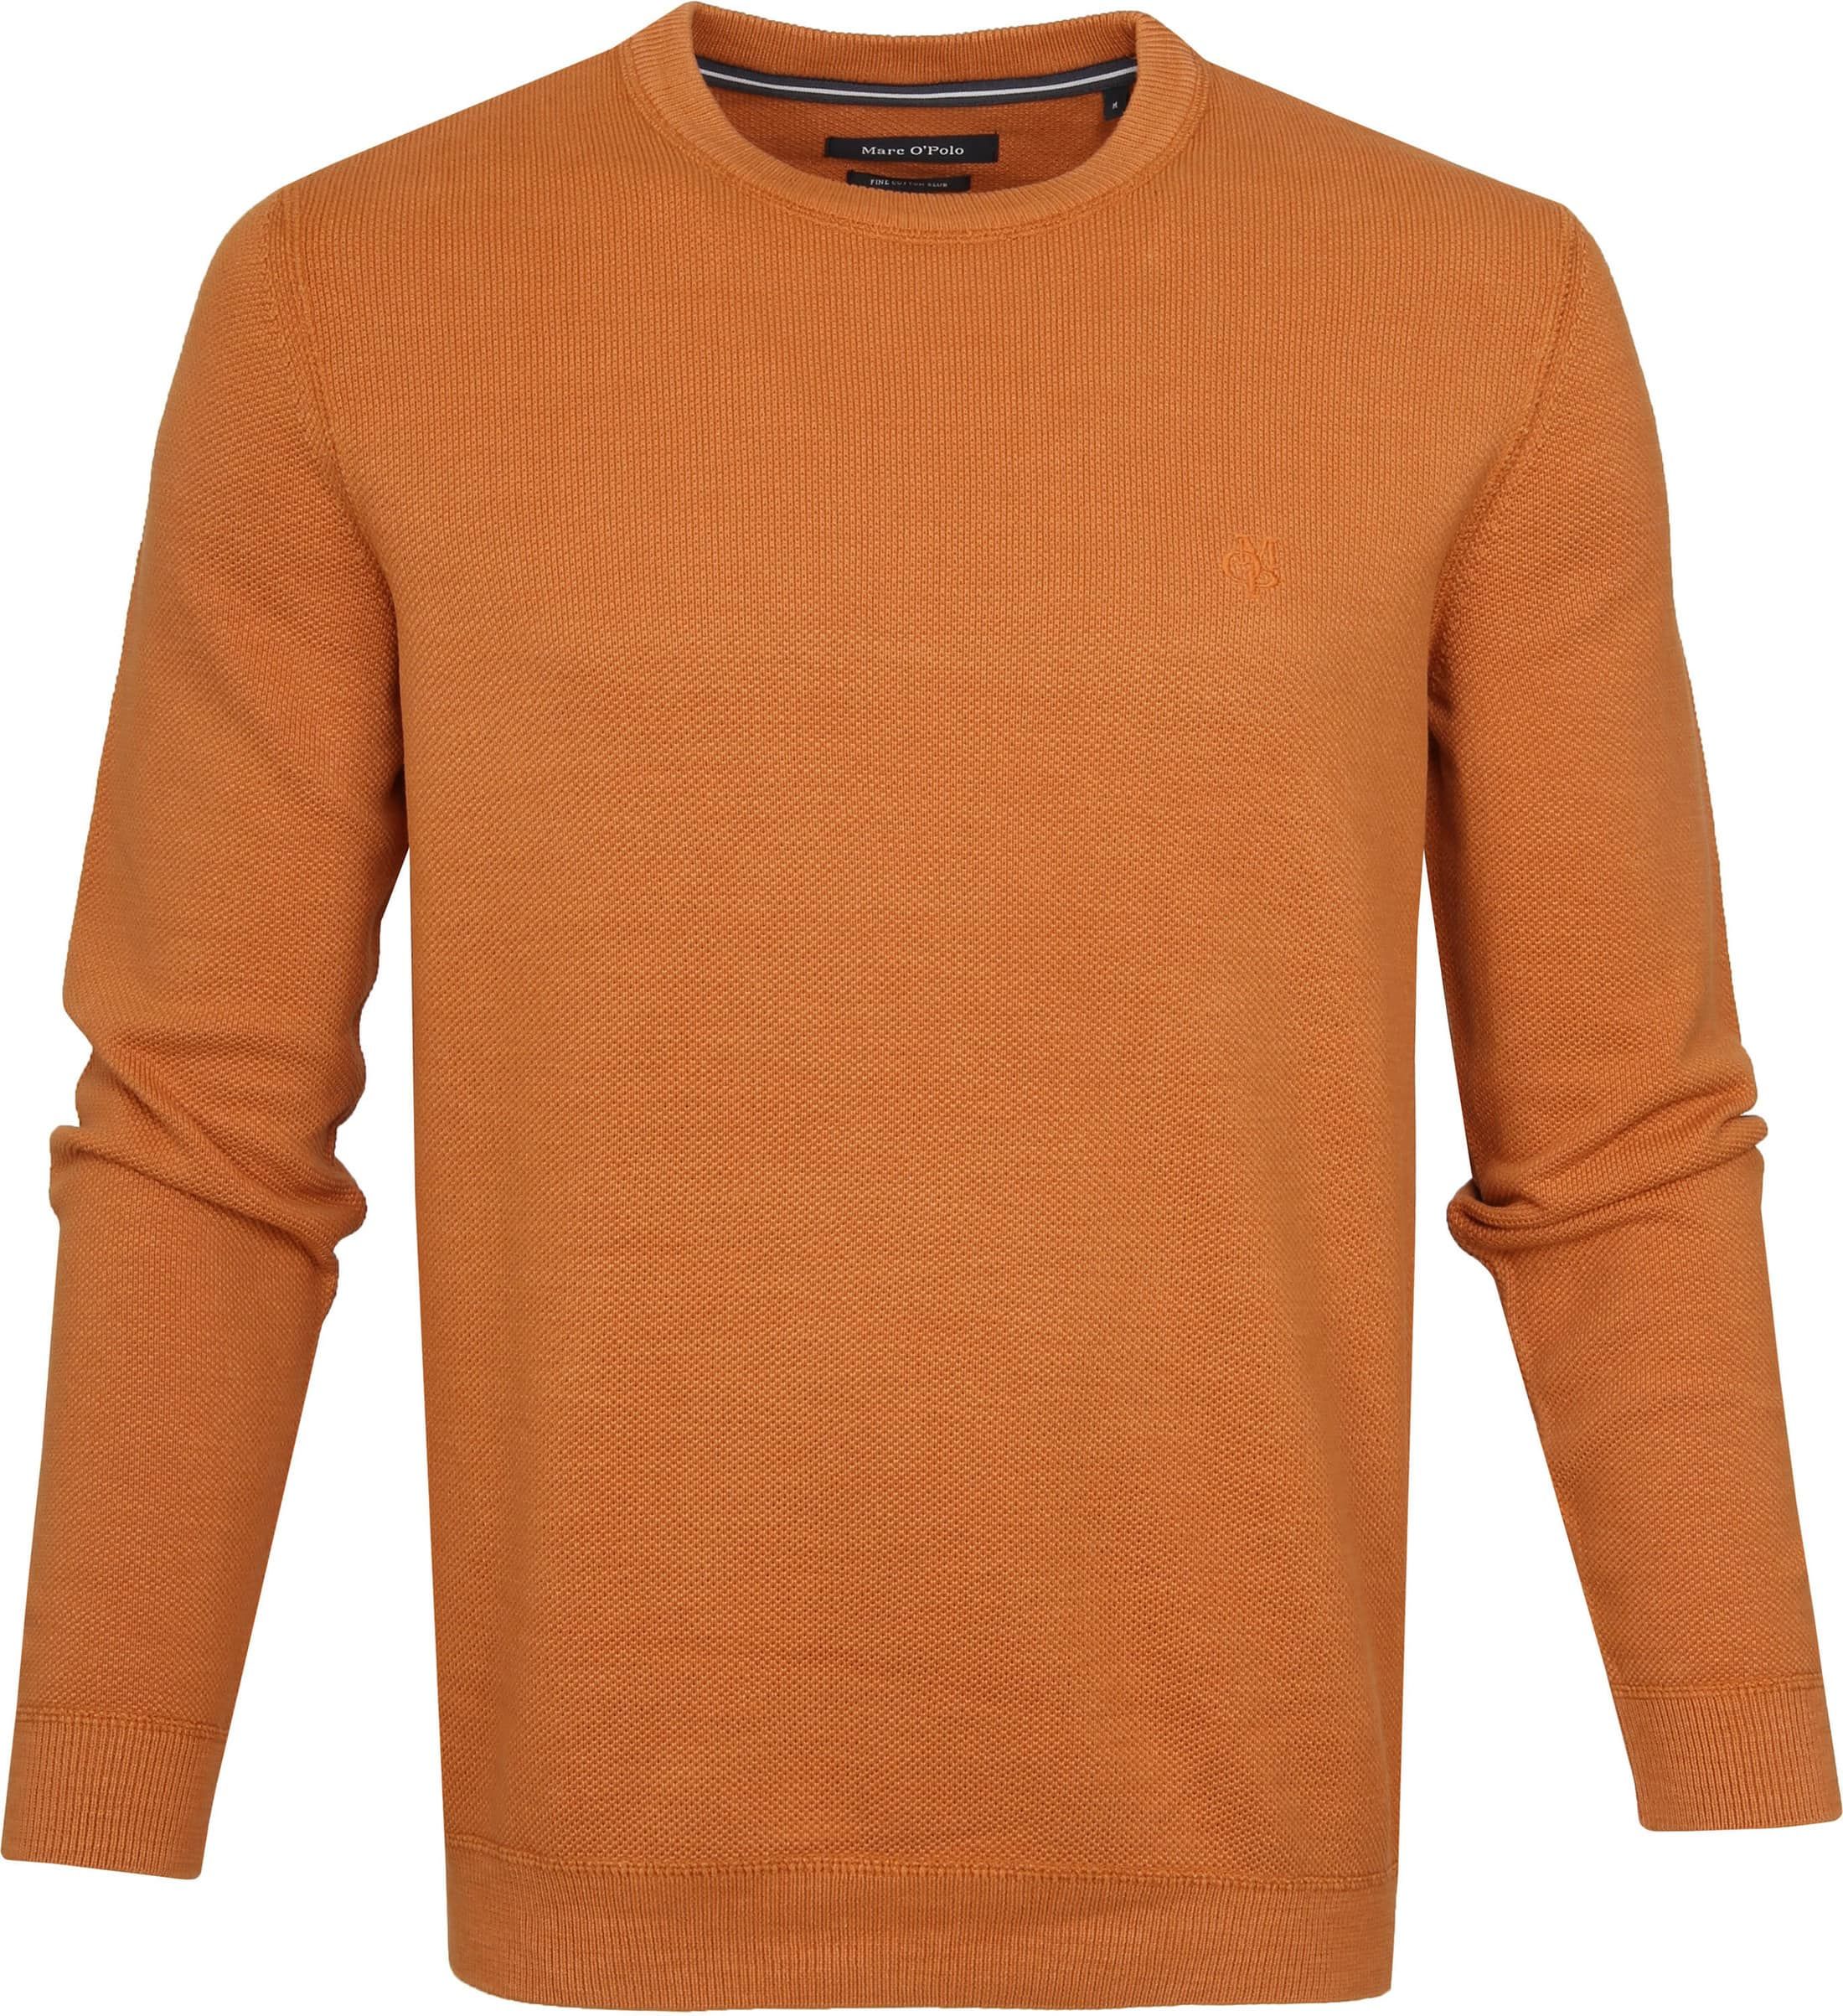 Marc O'Polo Pullover Dessin Orange size XXL